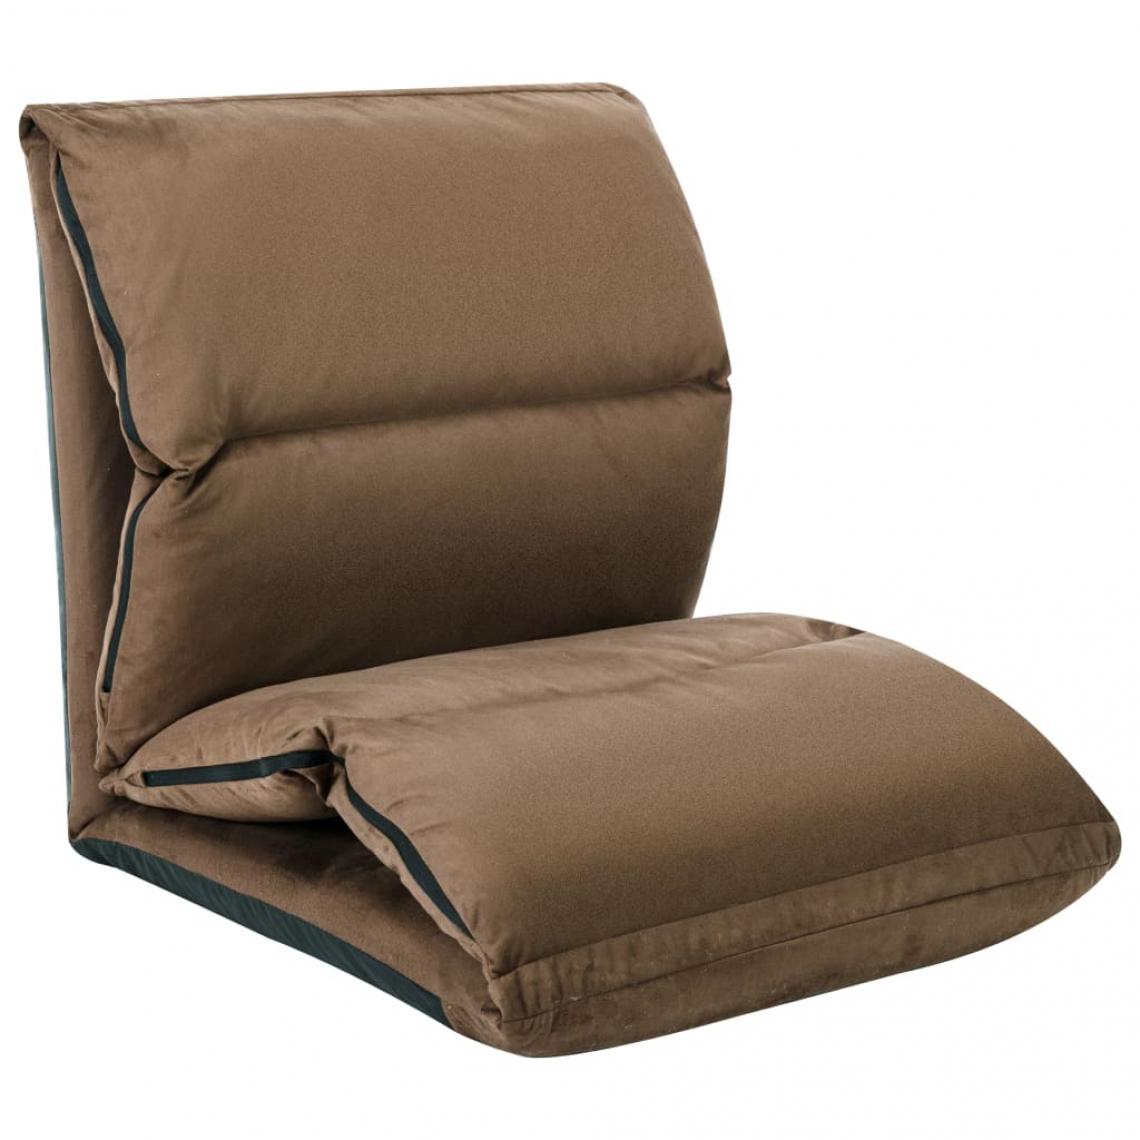 Vidaxl - vidaXL Chaise pliable de sol Taupe Microfibre - Transats, chaises longues